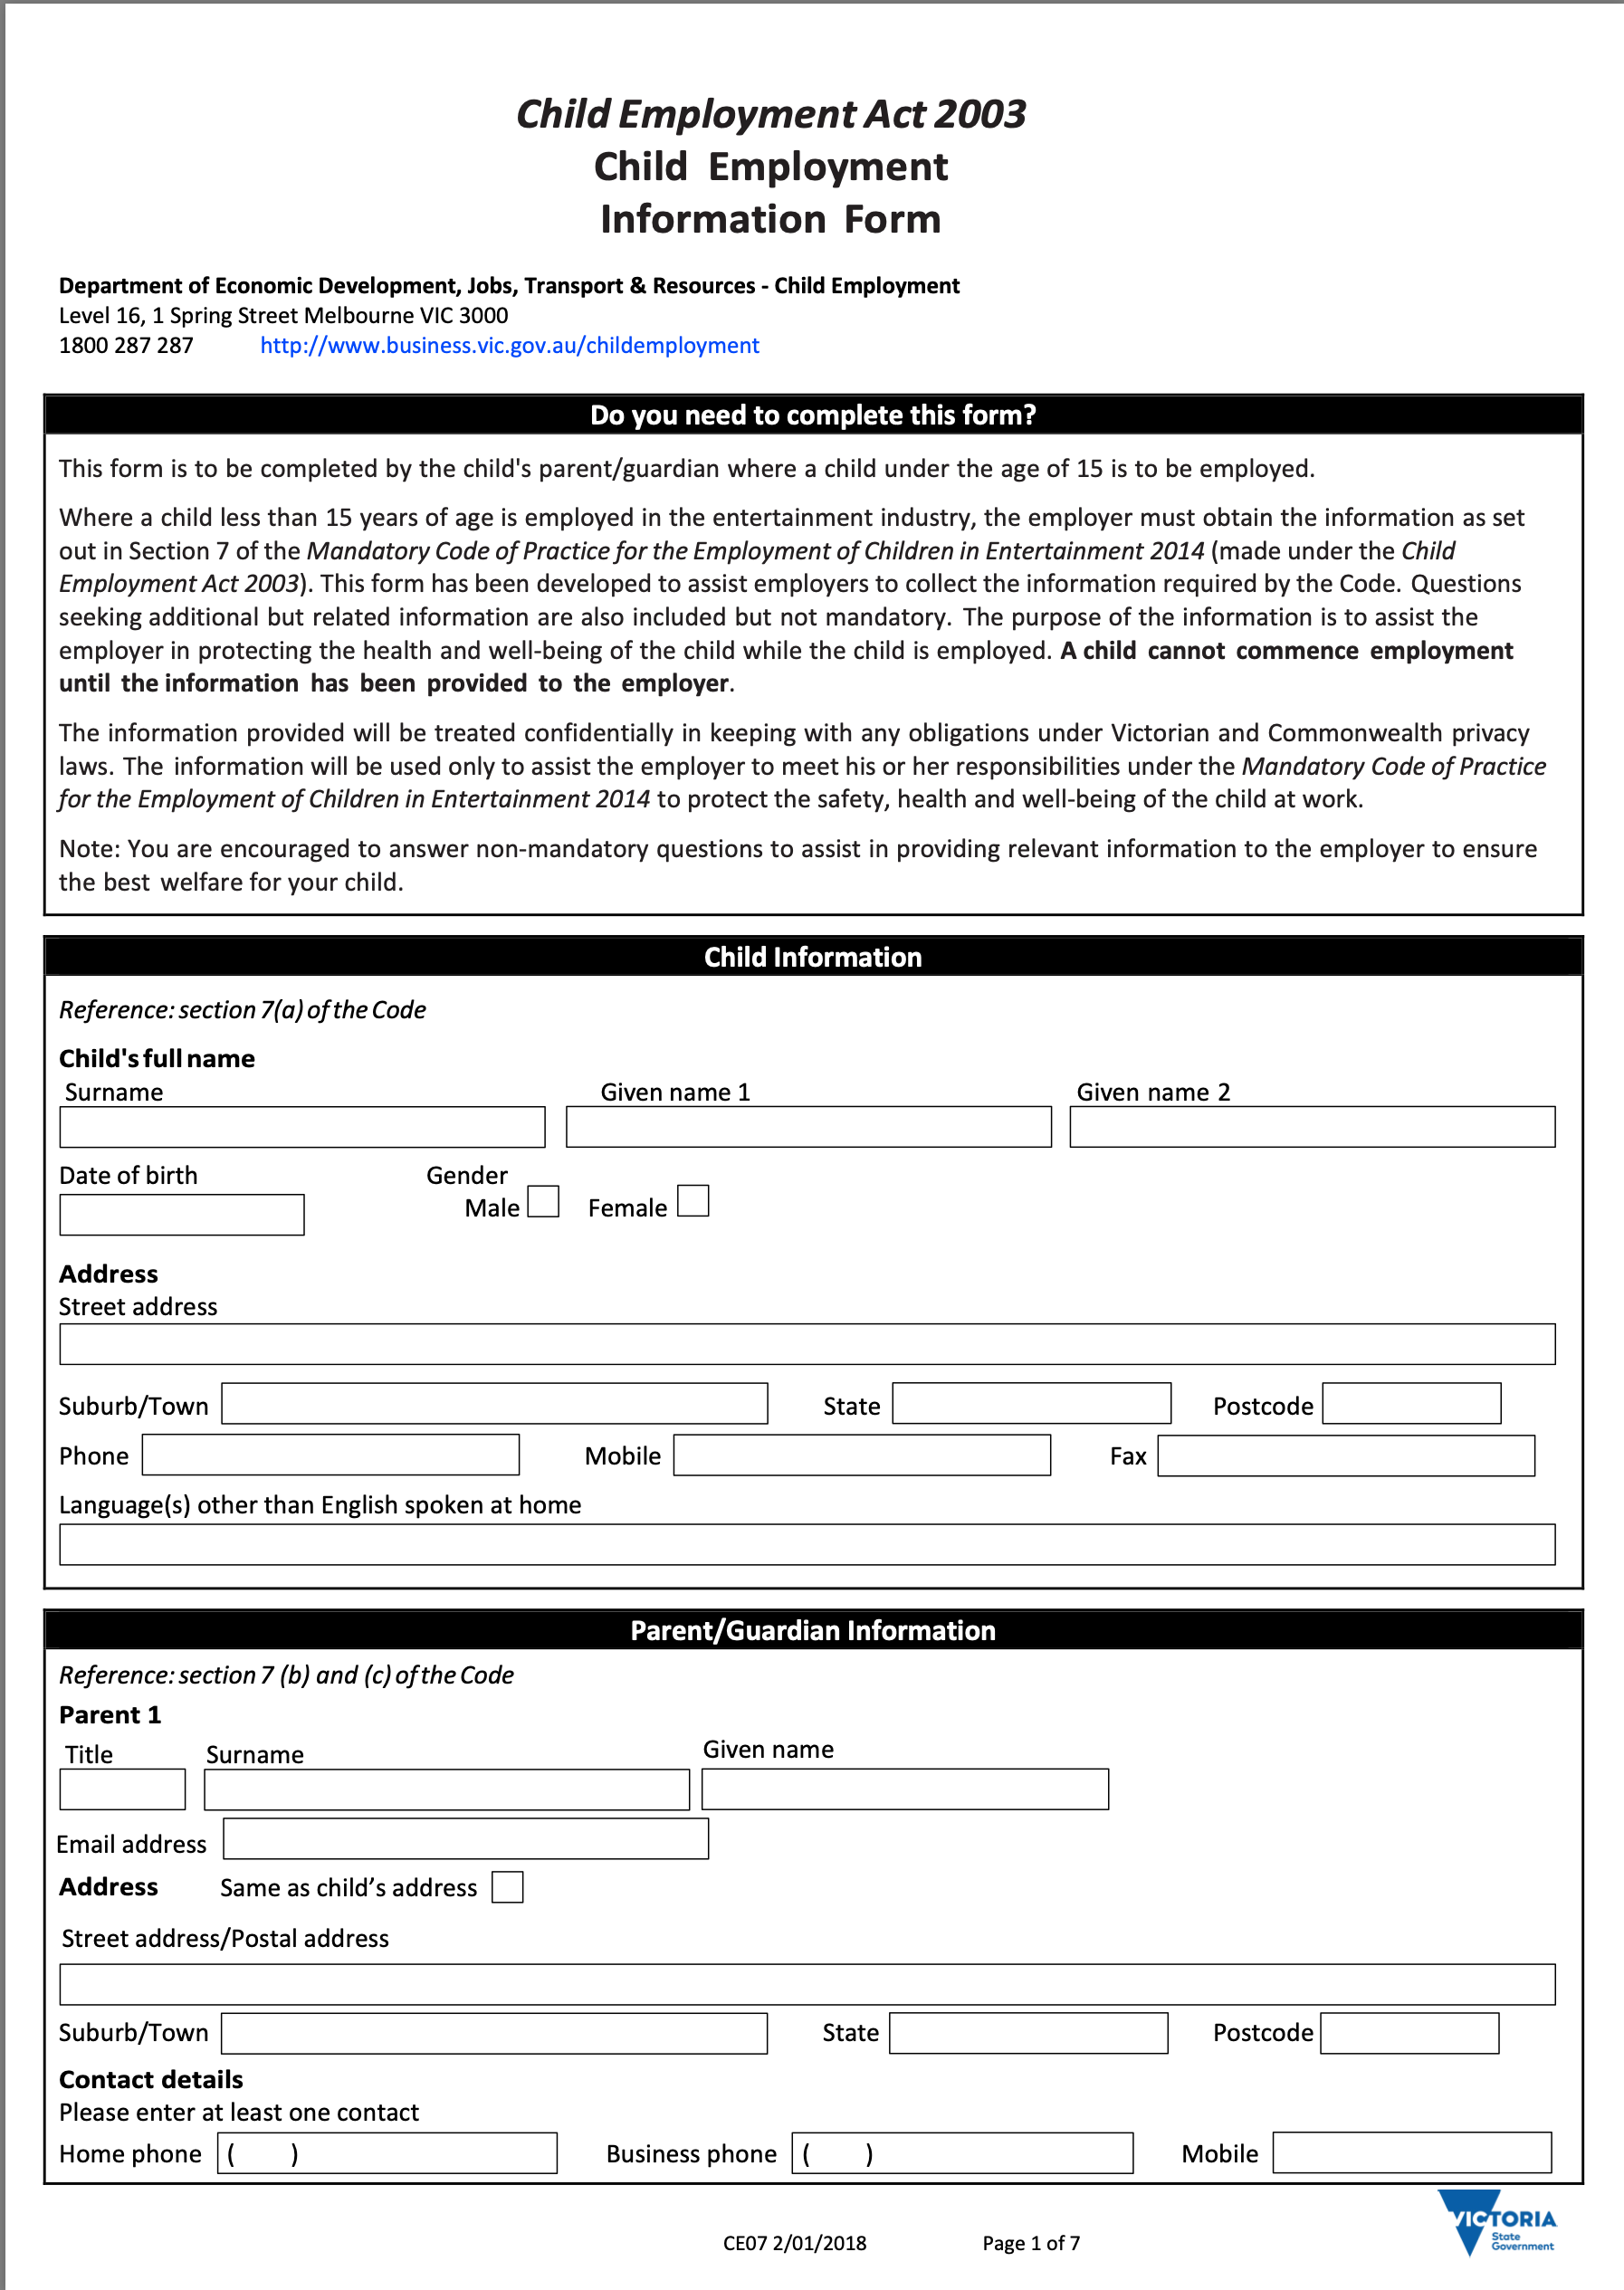 1. Child Employment Information Form